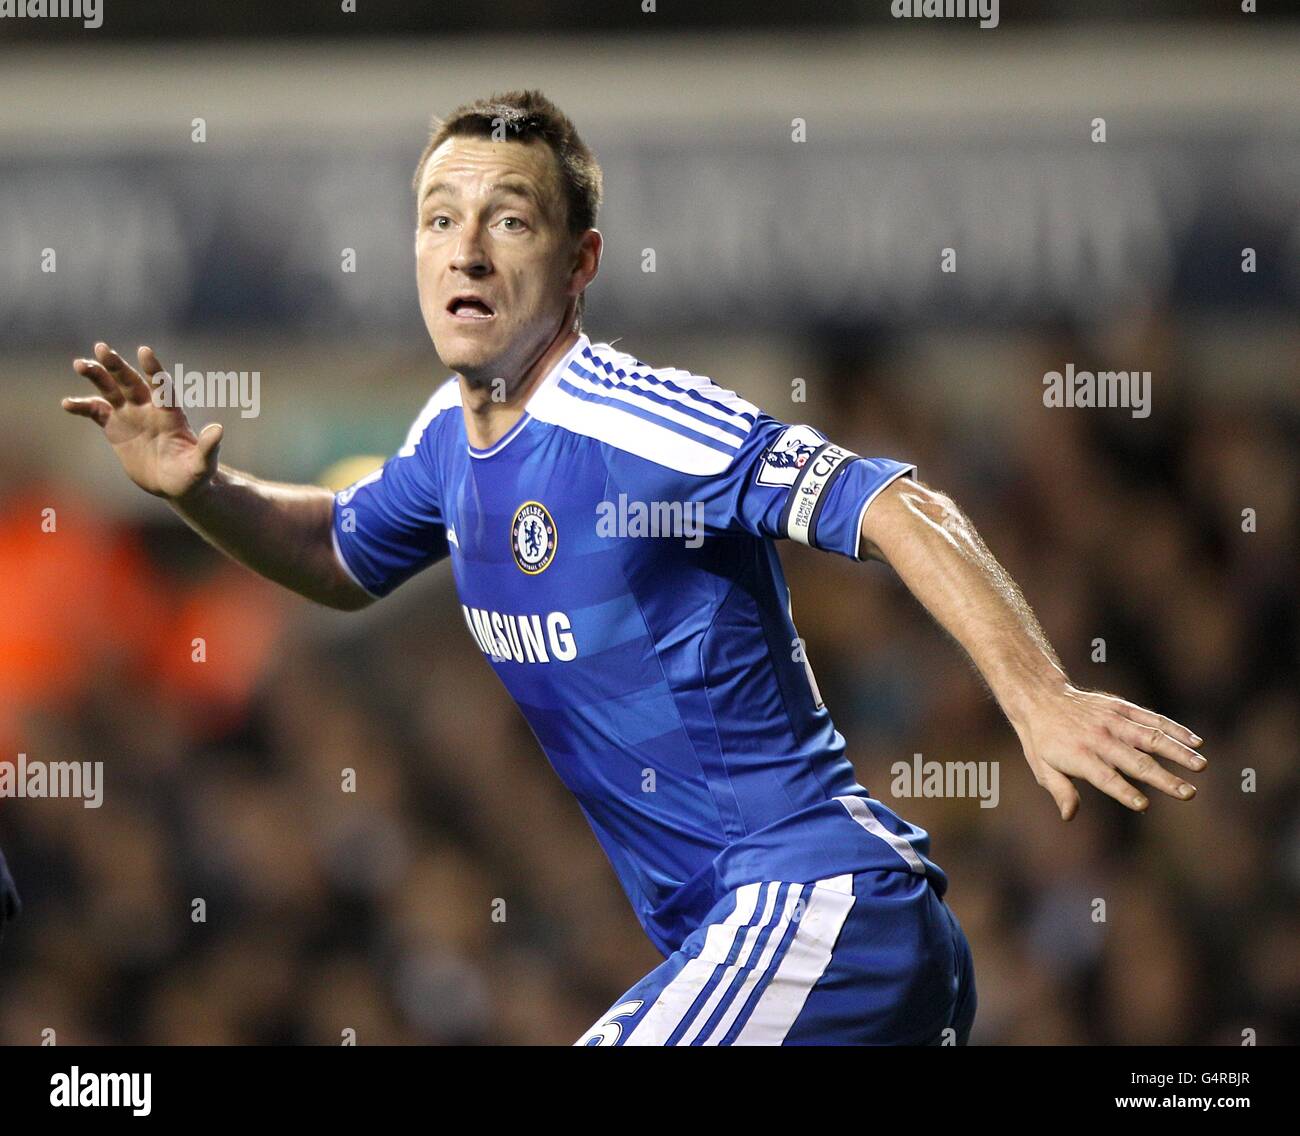 Calcio - Barclays Premier League - Tottenham Hotspur v Chelsea - White Hart Lane. John Terry di Chelsea in azione Foto Stock